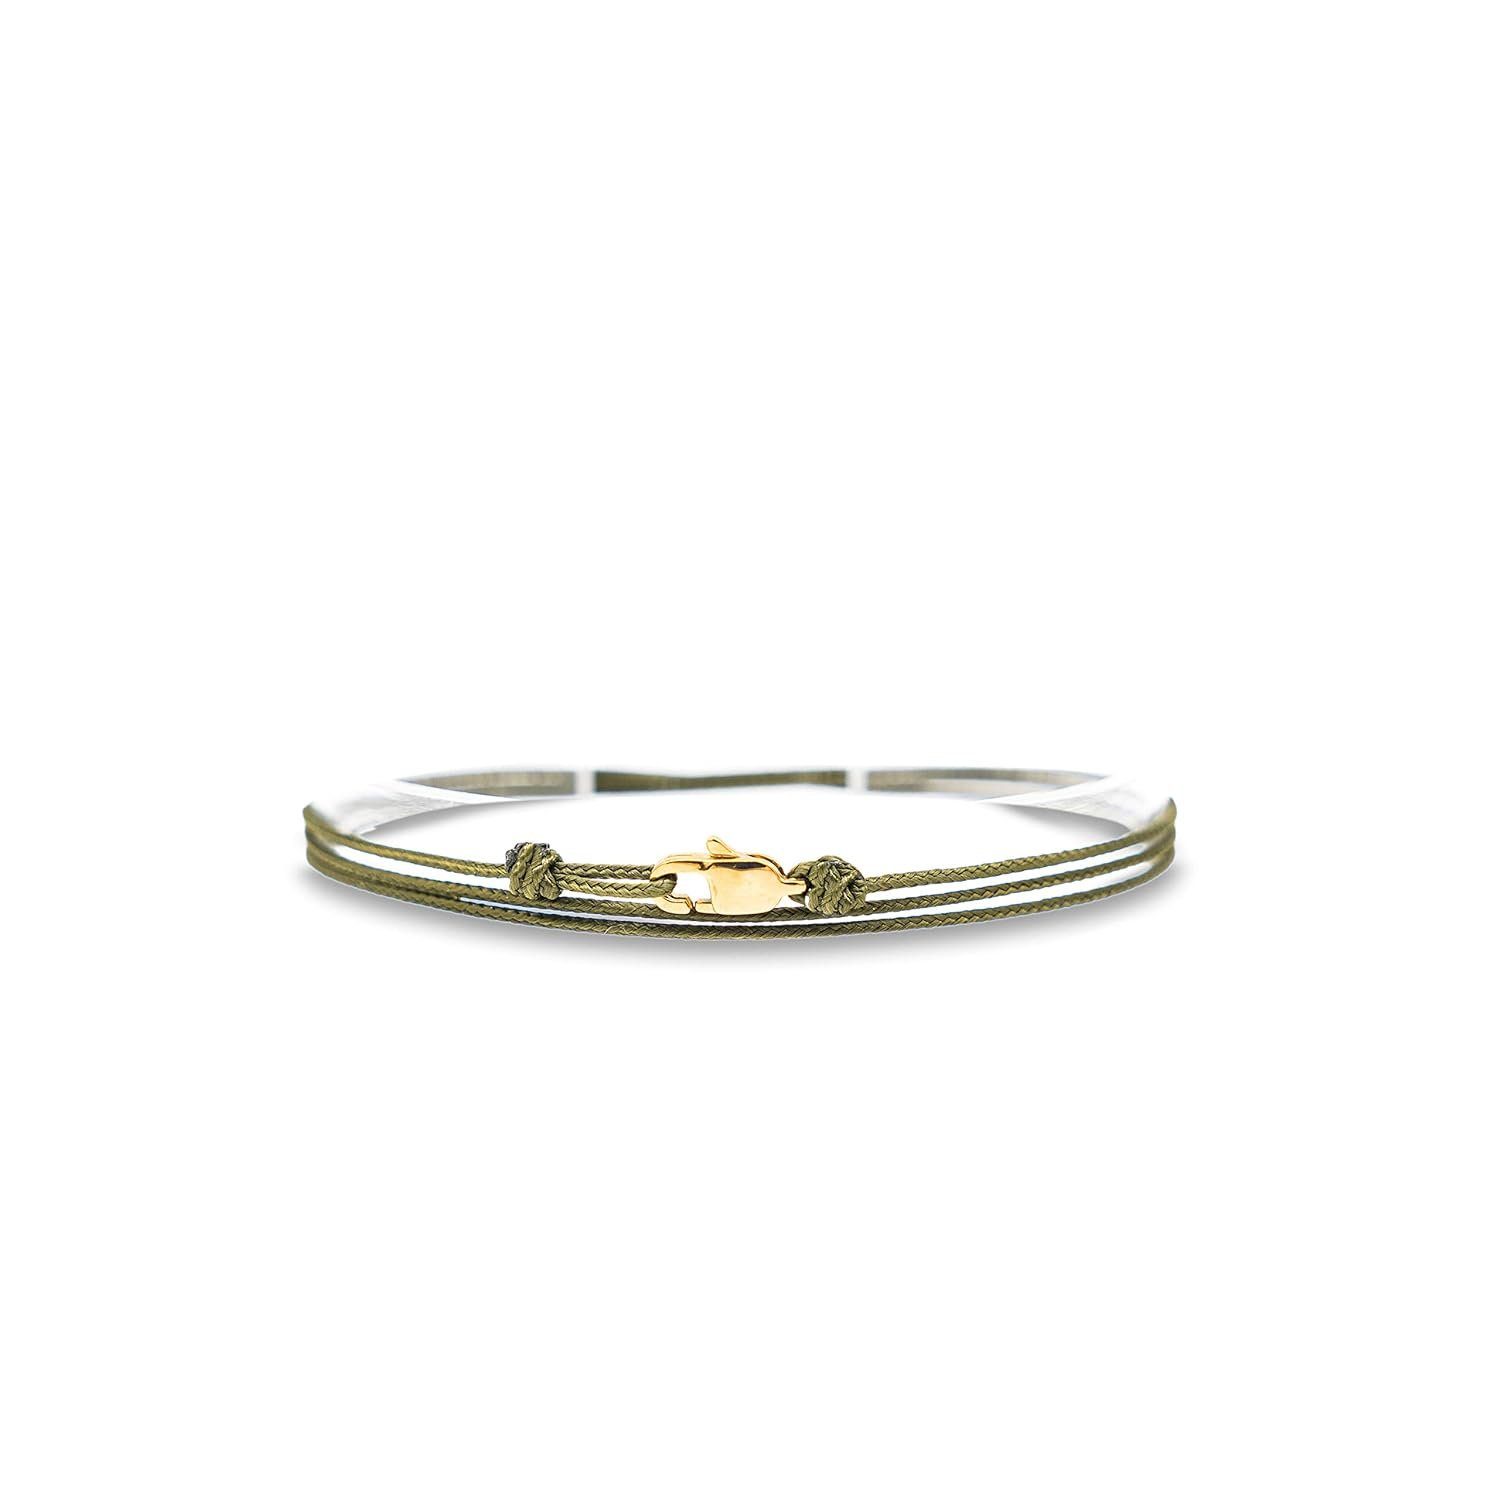 Made by Nami Wickelarmband Minimalistisches Armband mit Karabinerhaken Herren Armband Damen, Maritimes Armband Wasserfest & Verstellbar Grün Gold